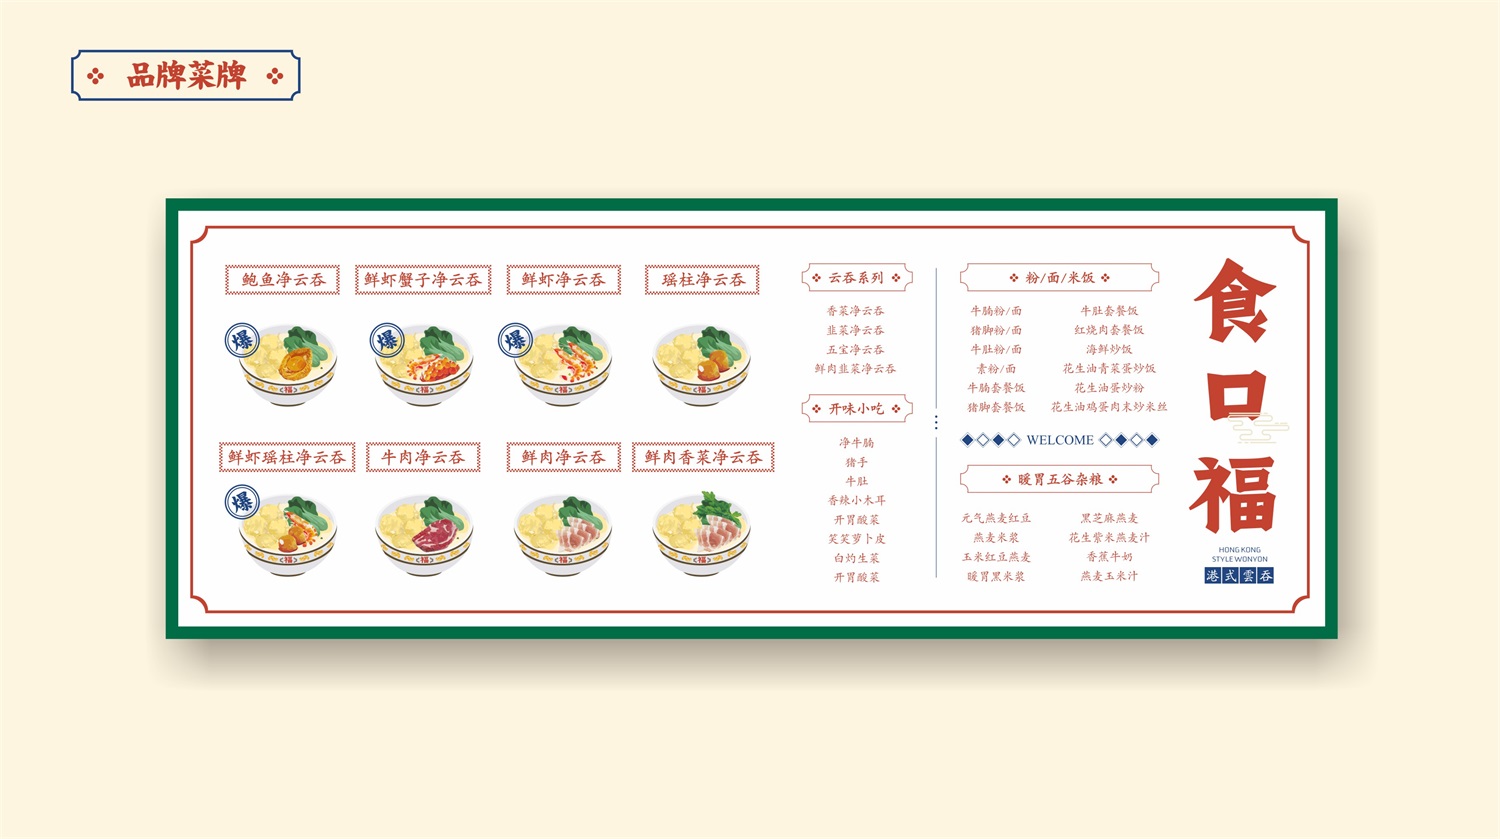 食口福广东餐饮连锁品牌餐牌设计